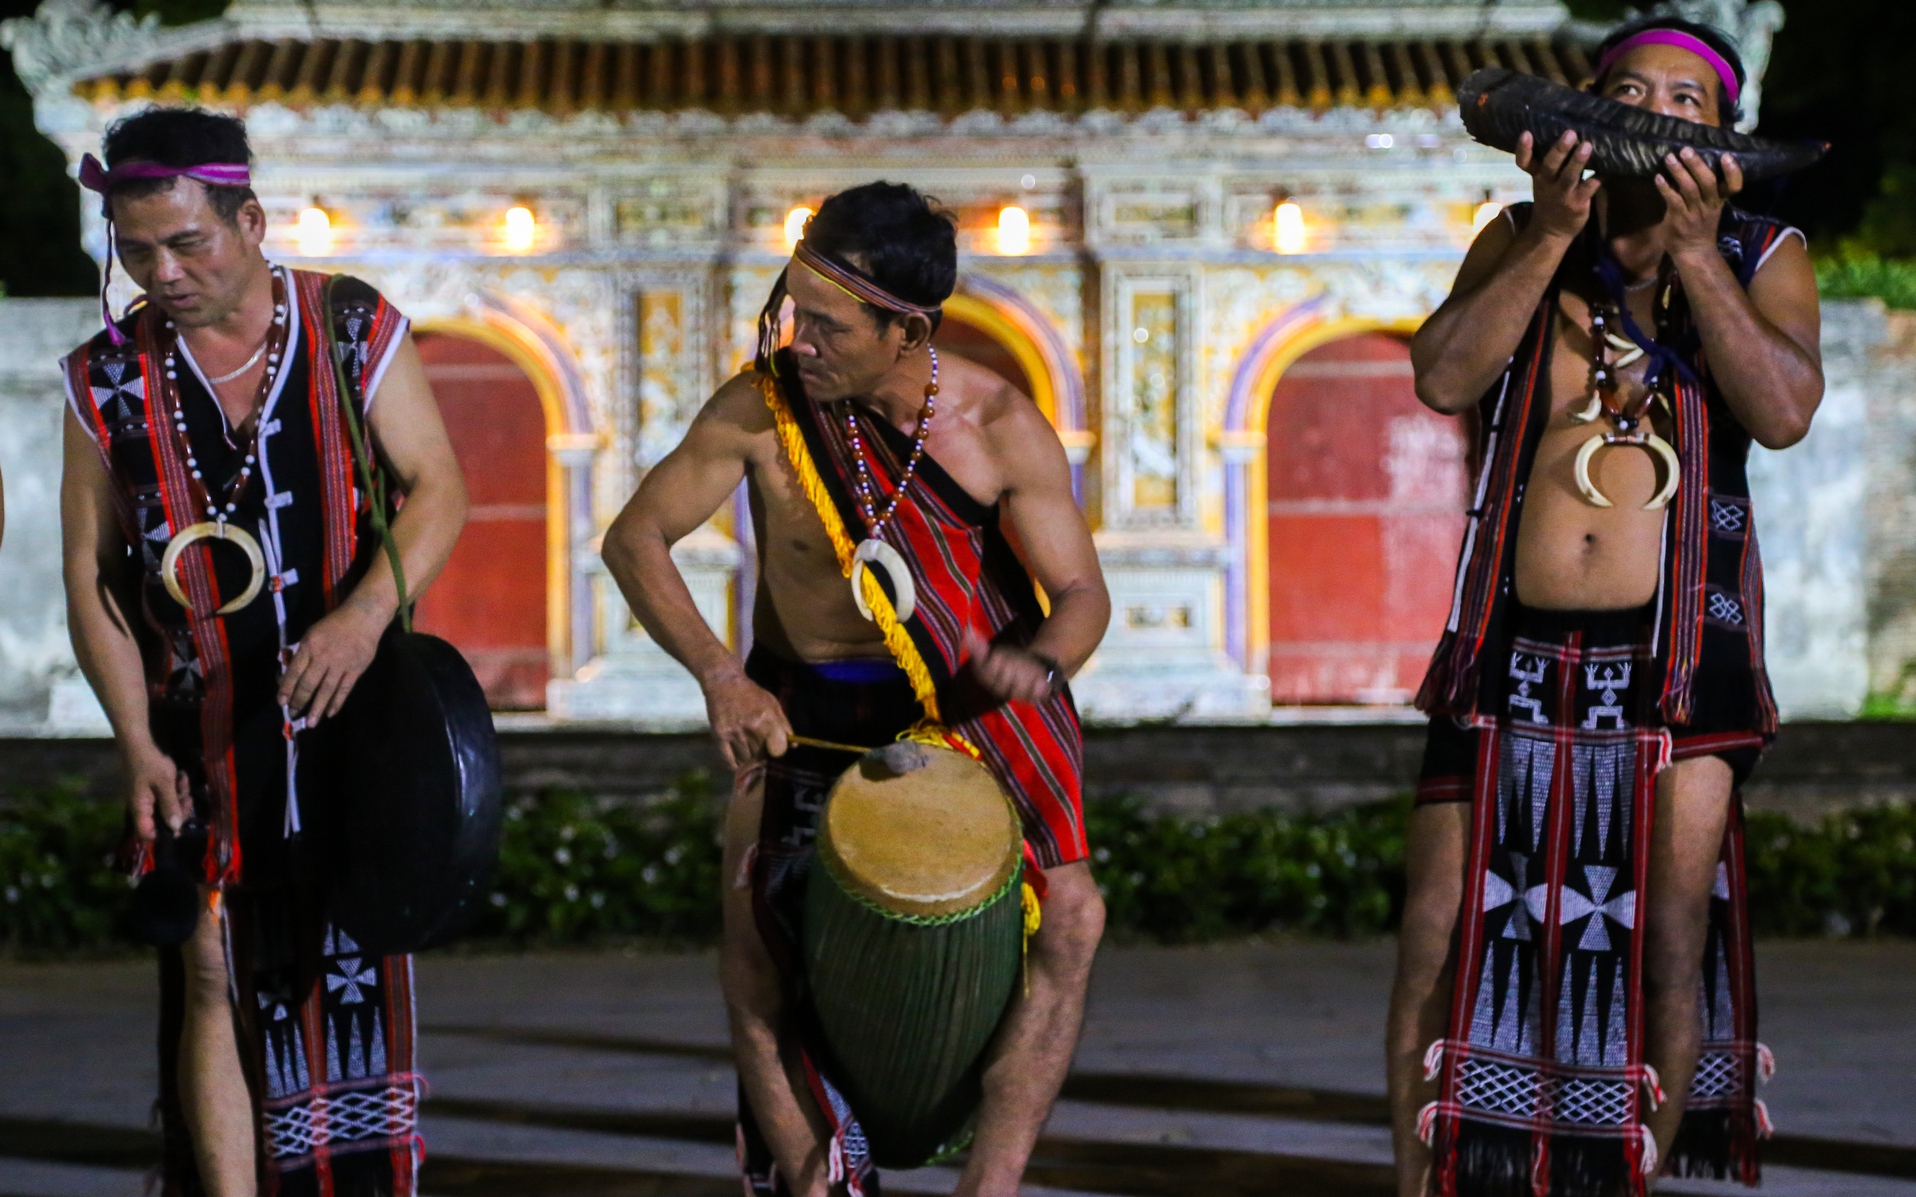 Giới thiệu bản sắc văn hóa của người Cơ Tu tại Phố đêm Hoàng Thành Huế